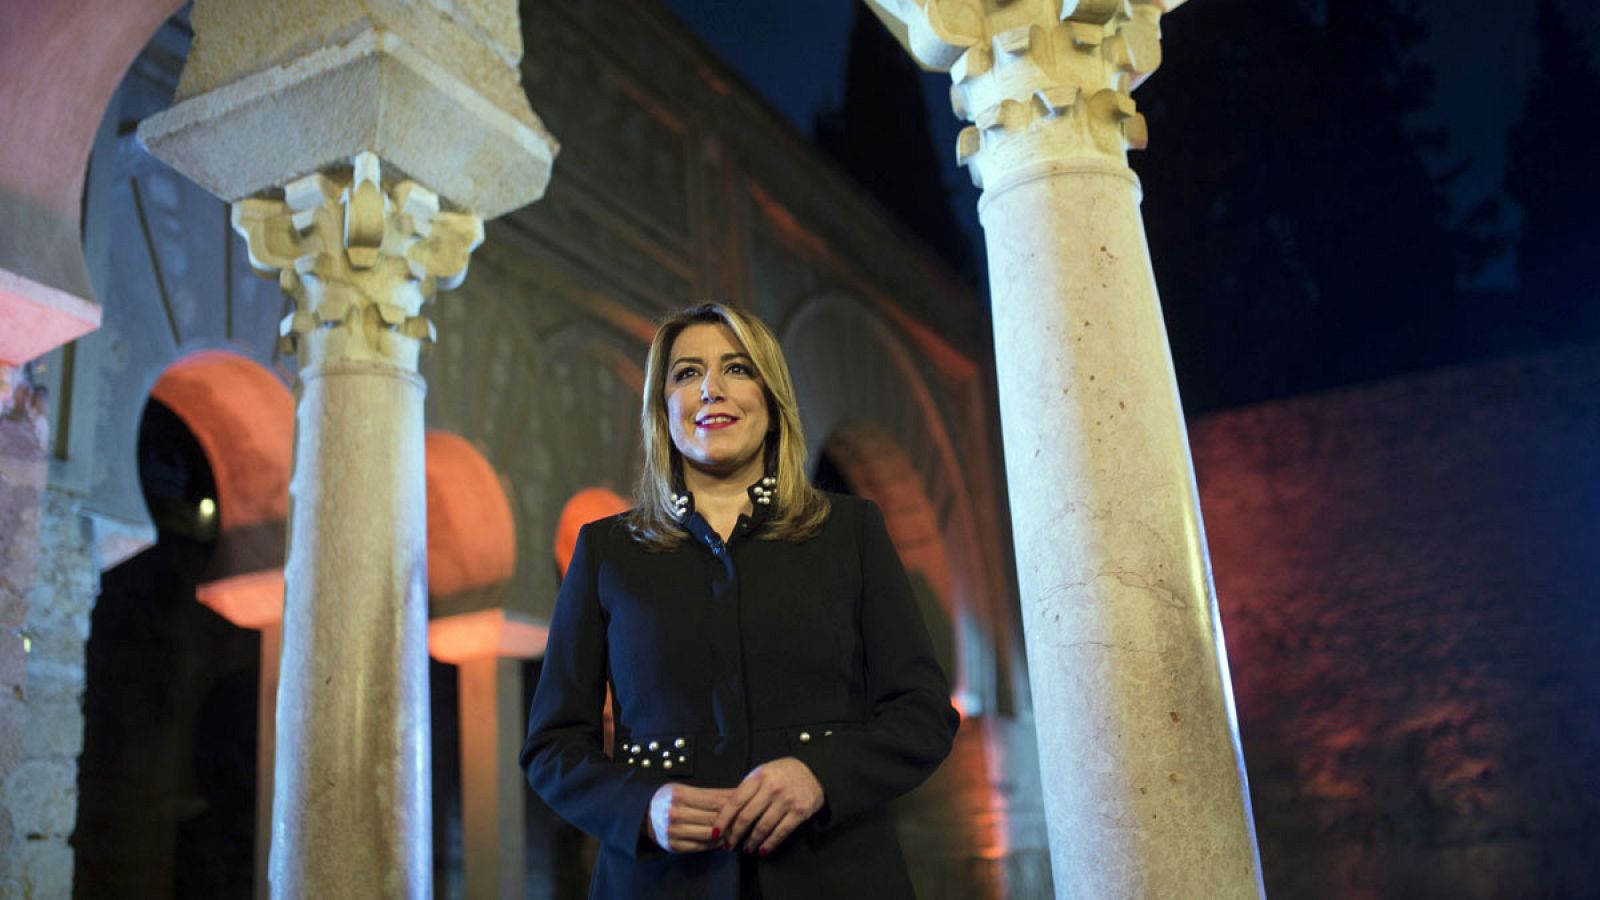 La presidenta de la Junta de Andalucía, Susana Díaz, durante su tradicional mensaje de Fin de Año a los andaluces, en esta ocasión desde la ciudad califal de Medina Azahara, en Córdoba.